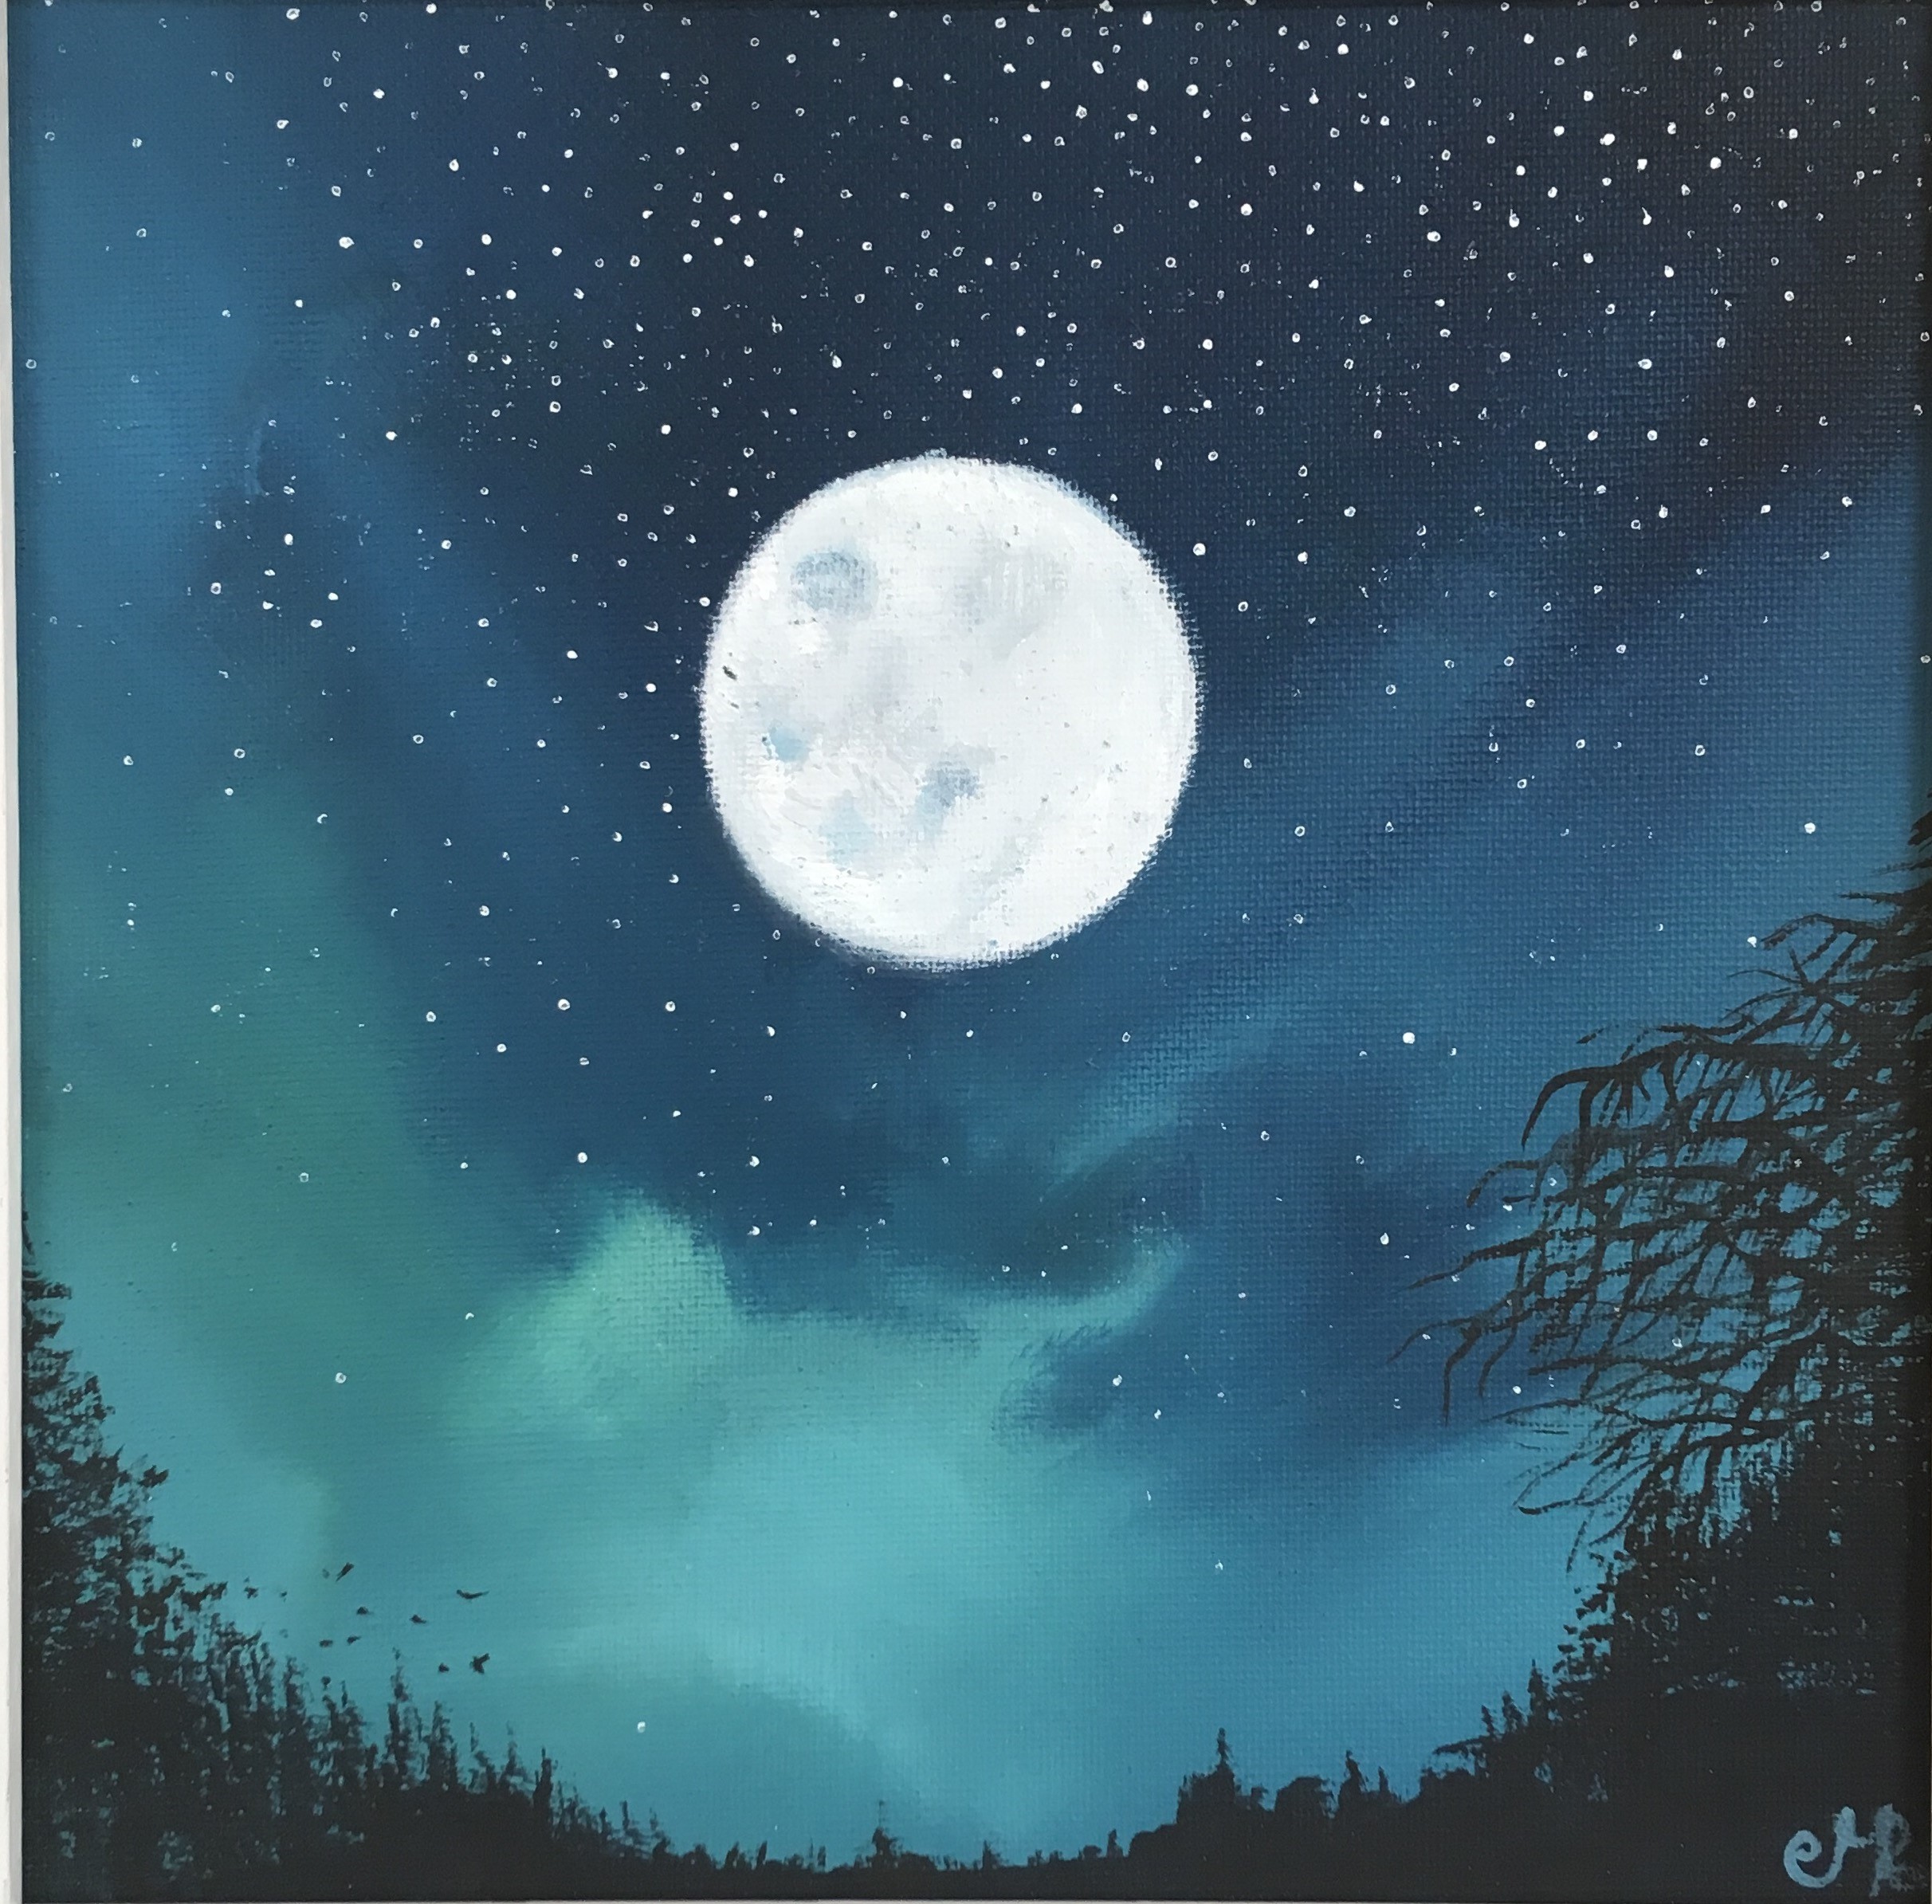 'Moonlight' by artist Maureen Rocksmoore